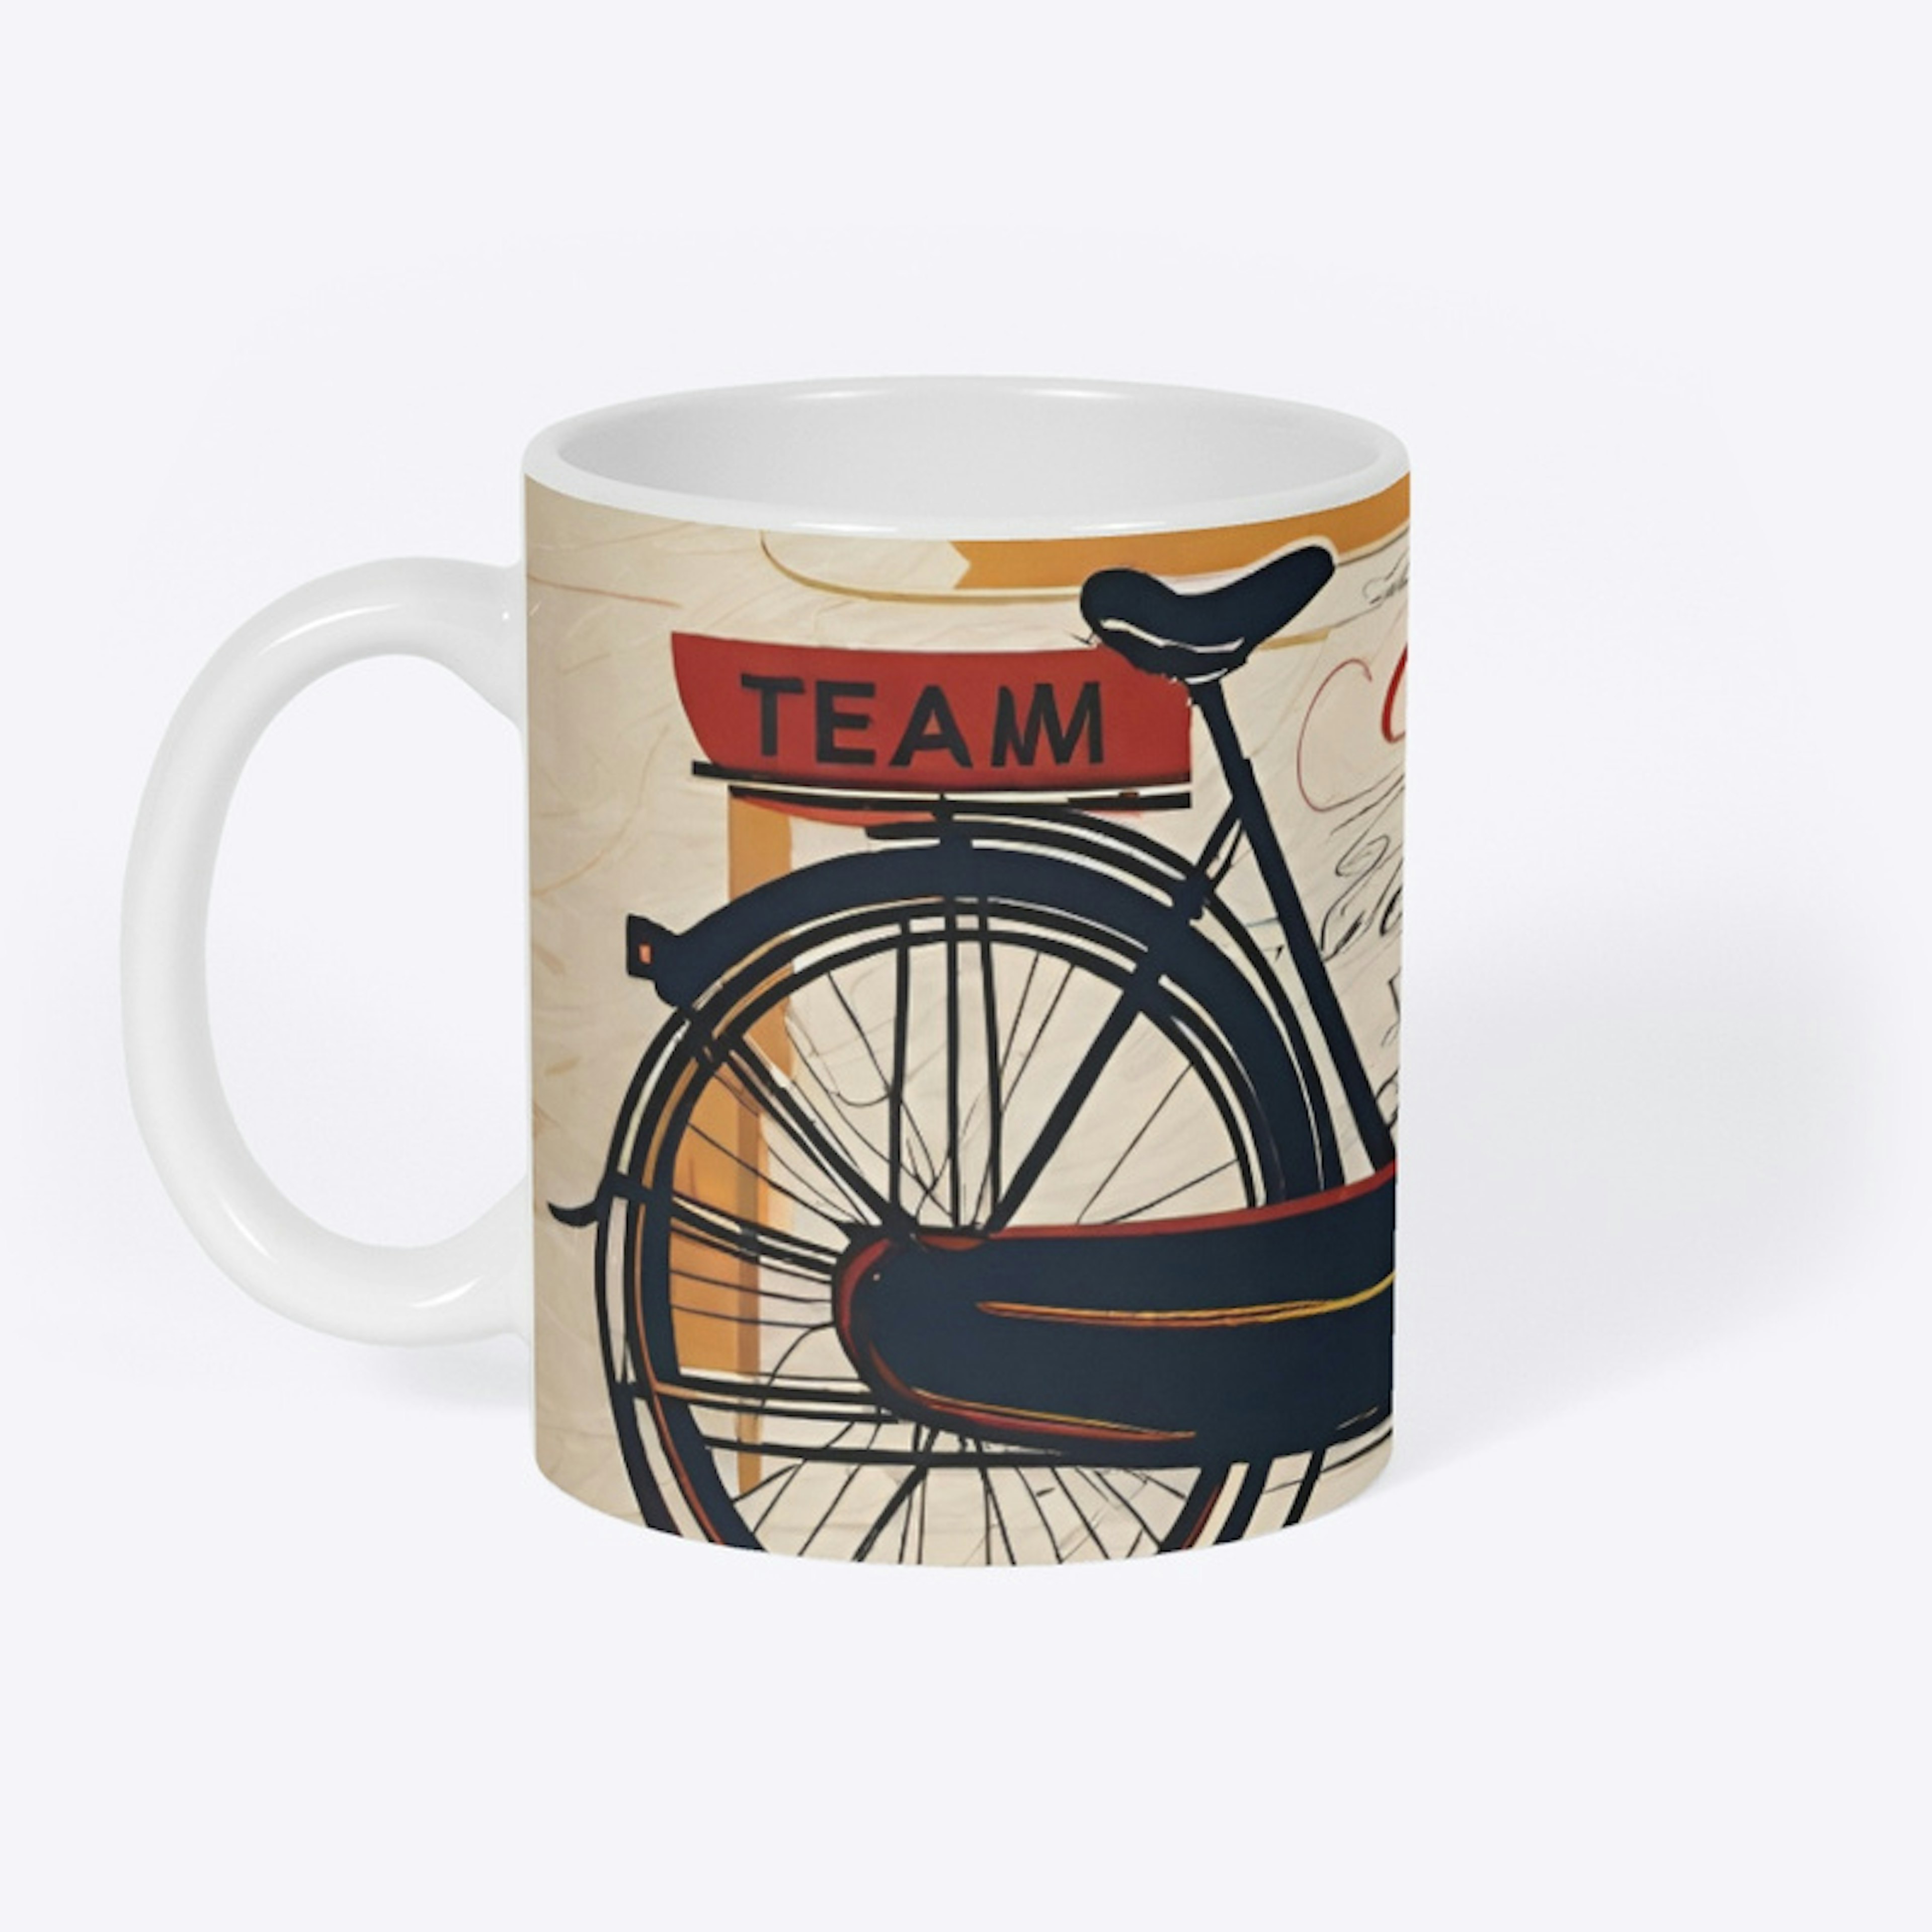 Team CABS Kaos Coffee Mug